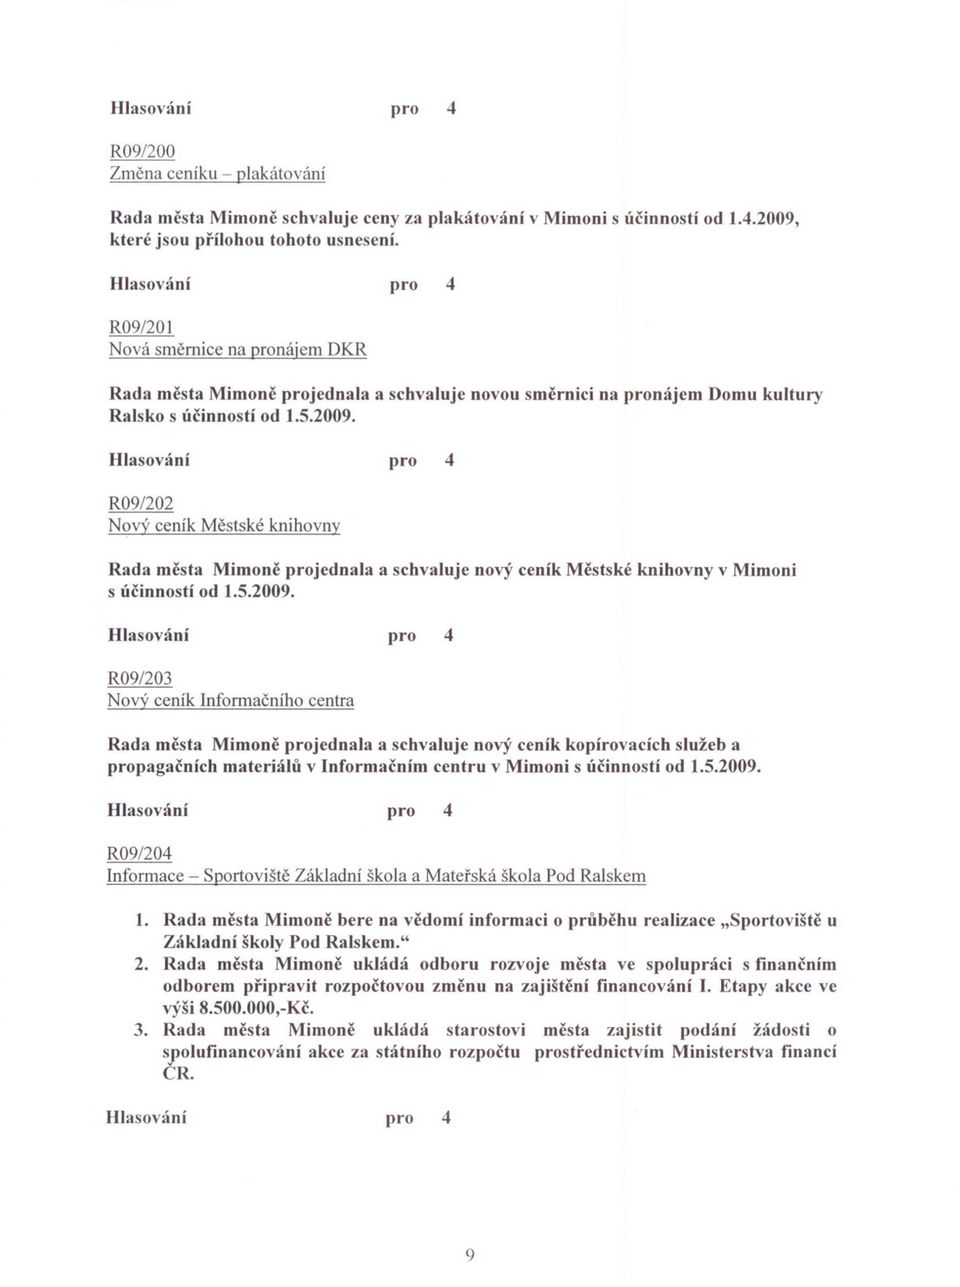 R09/202 Nový ceník Mestské knihovny Rada mcsta Mimone projednala a schvaluje nový ceník Mestské knihovny v Mimoni s úcinností od 1.5.2009.